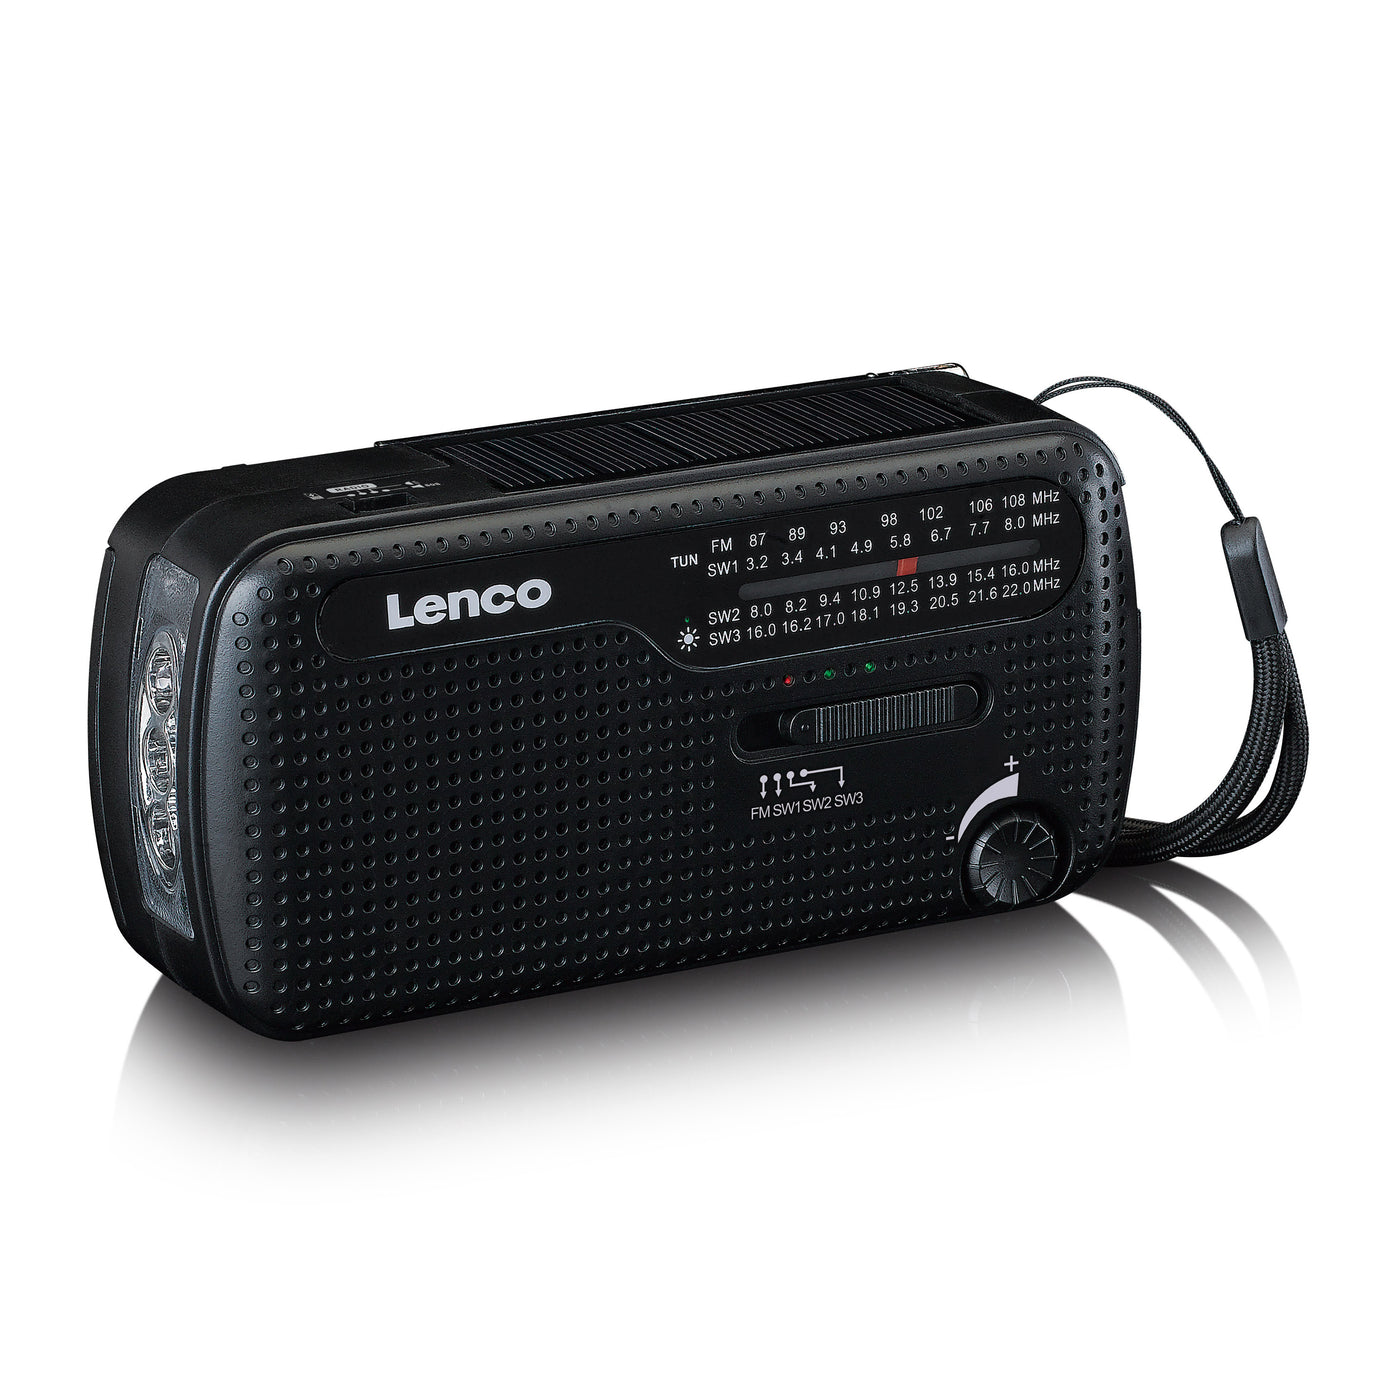 Lenco MCR-113BK - Radio d'urgence portable à manivelle, lampe de poche et banque d'alimentation en un seul appareil - Noir